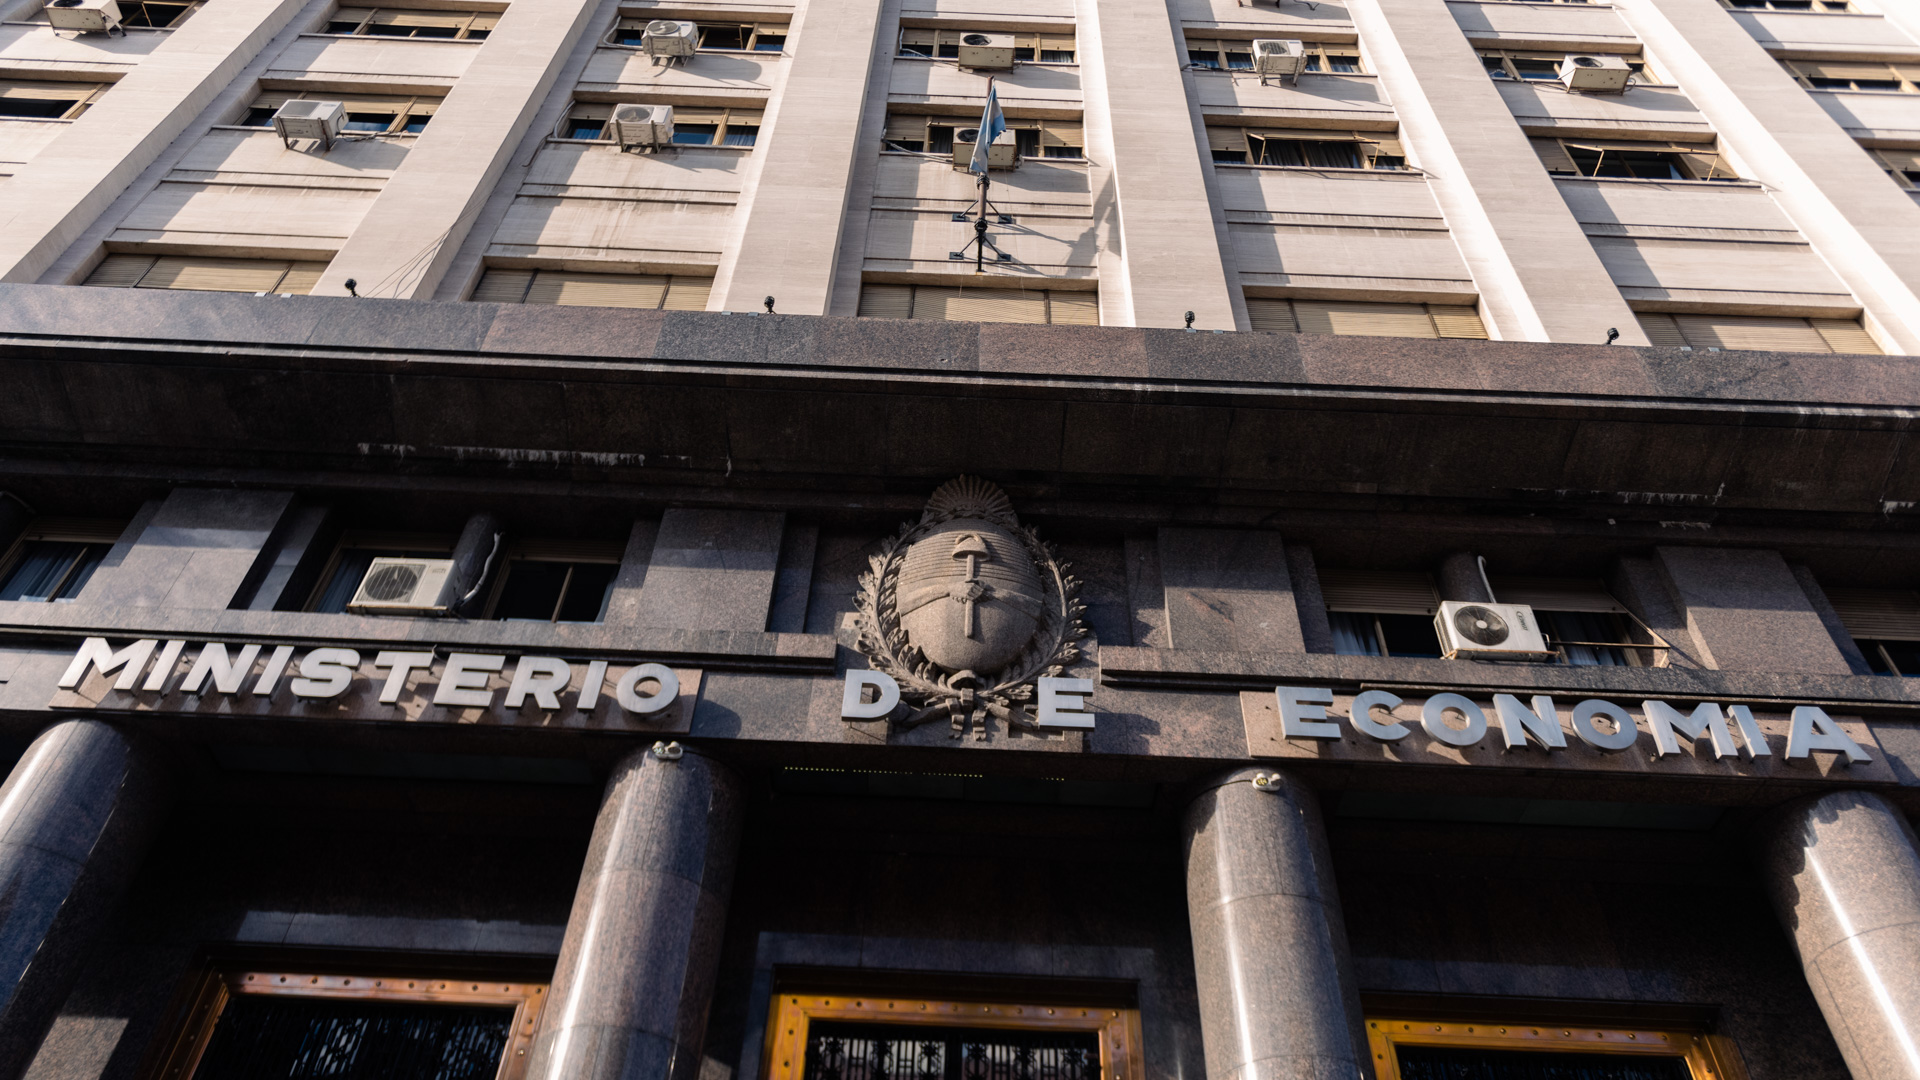 La mayor parte de la liquidez bancaria está colocada en títulos públicos ilíquidos y defaulteables constituyendo una hipoteca de valor incierto sobre el ahorro de los argentinos (Adrian Escandar)